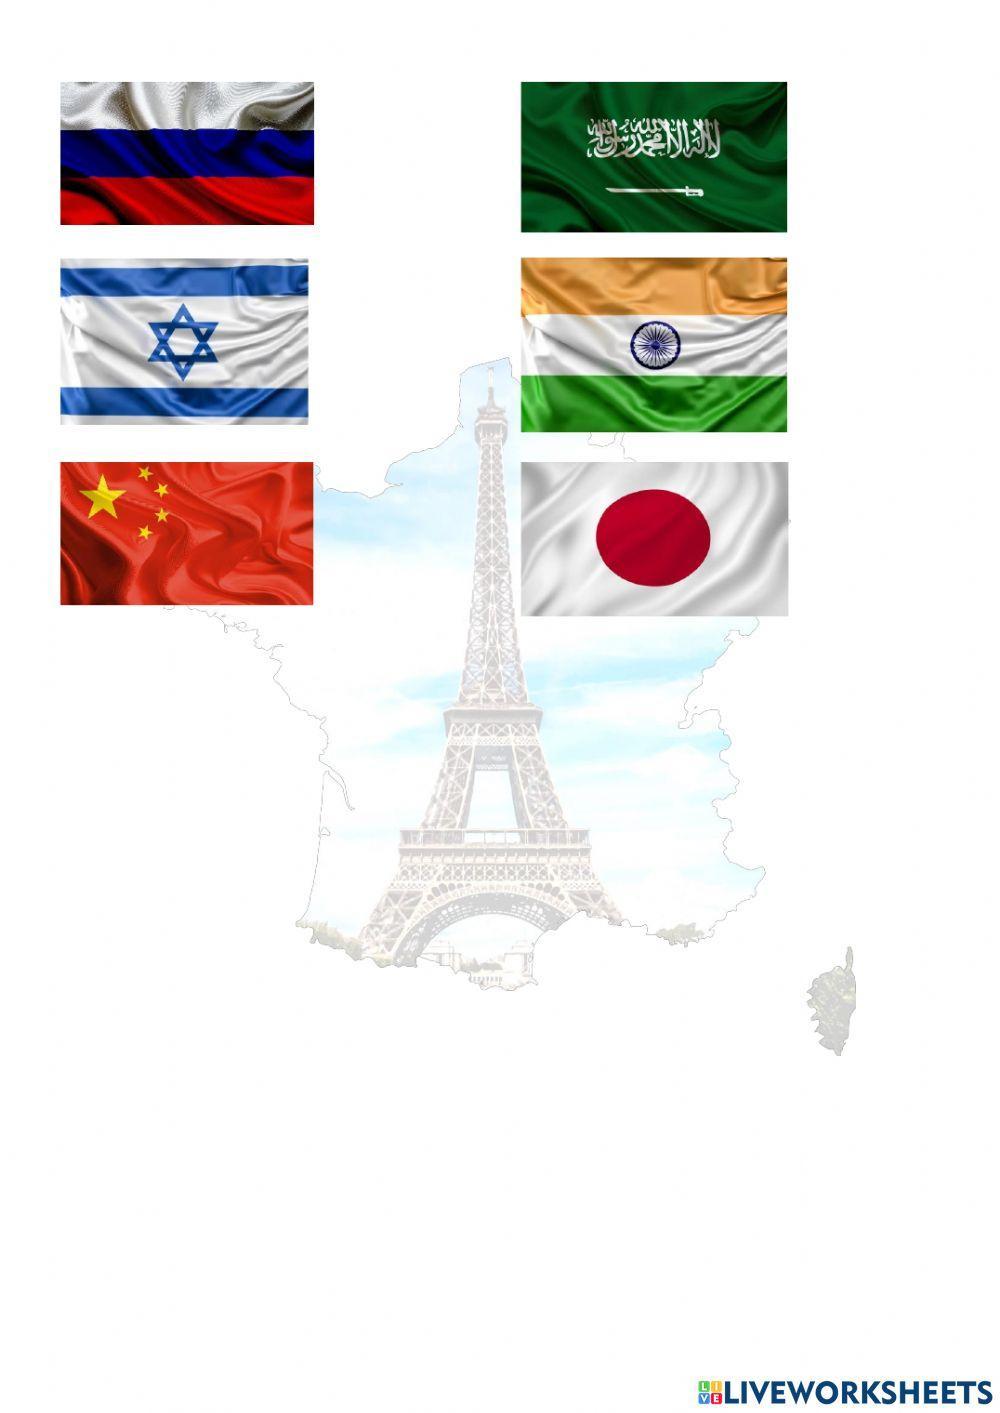 Les drapeaux et les langues